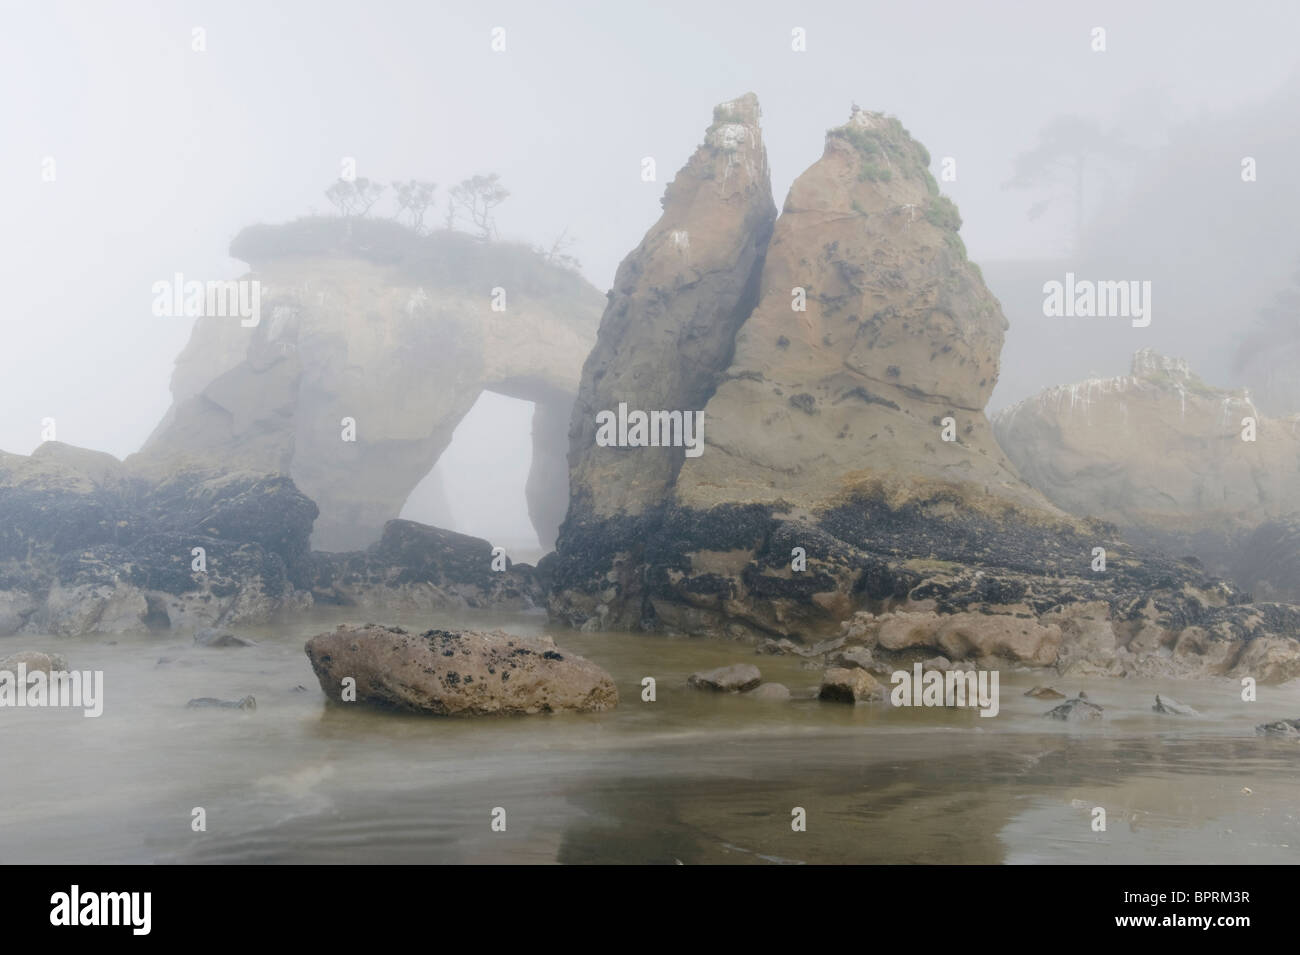 Seastacks dans le brouillard, Elephant Rock, Quinault Indian Reservation, la côte du Pacifique, Washington, USA Banque D'Images